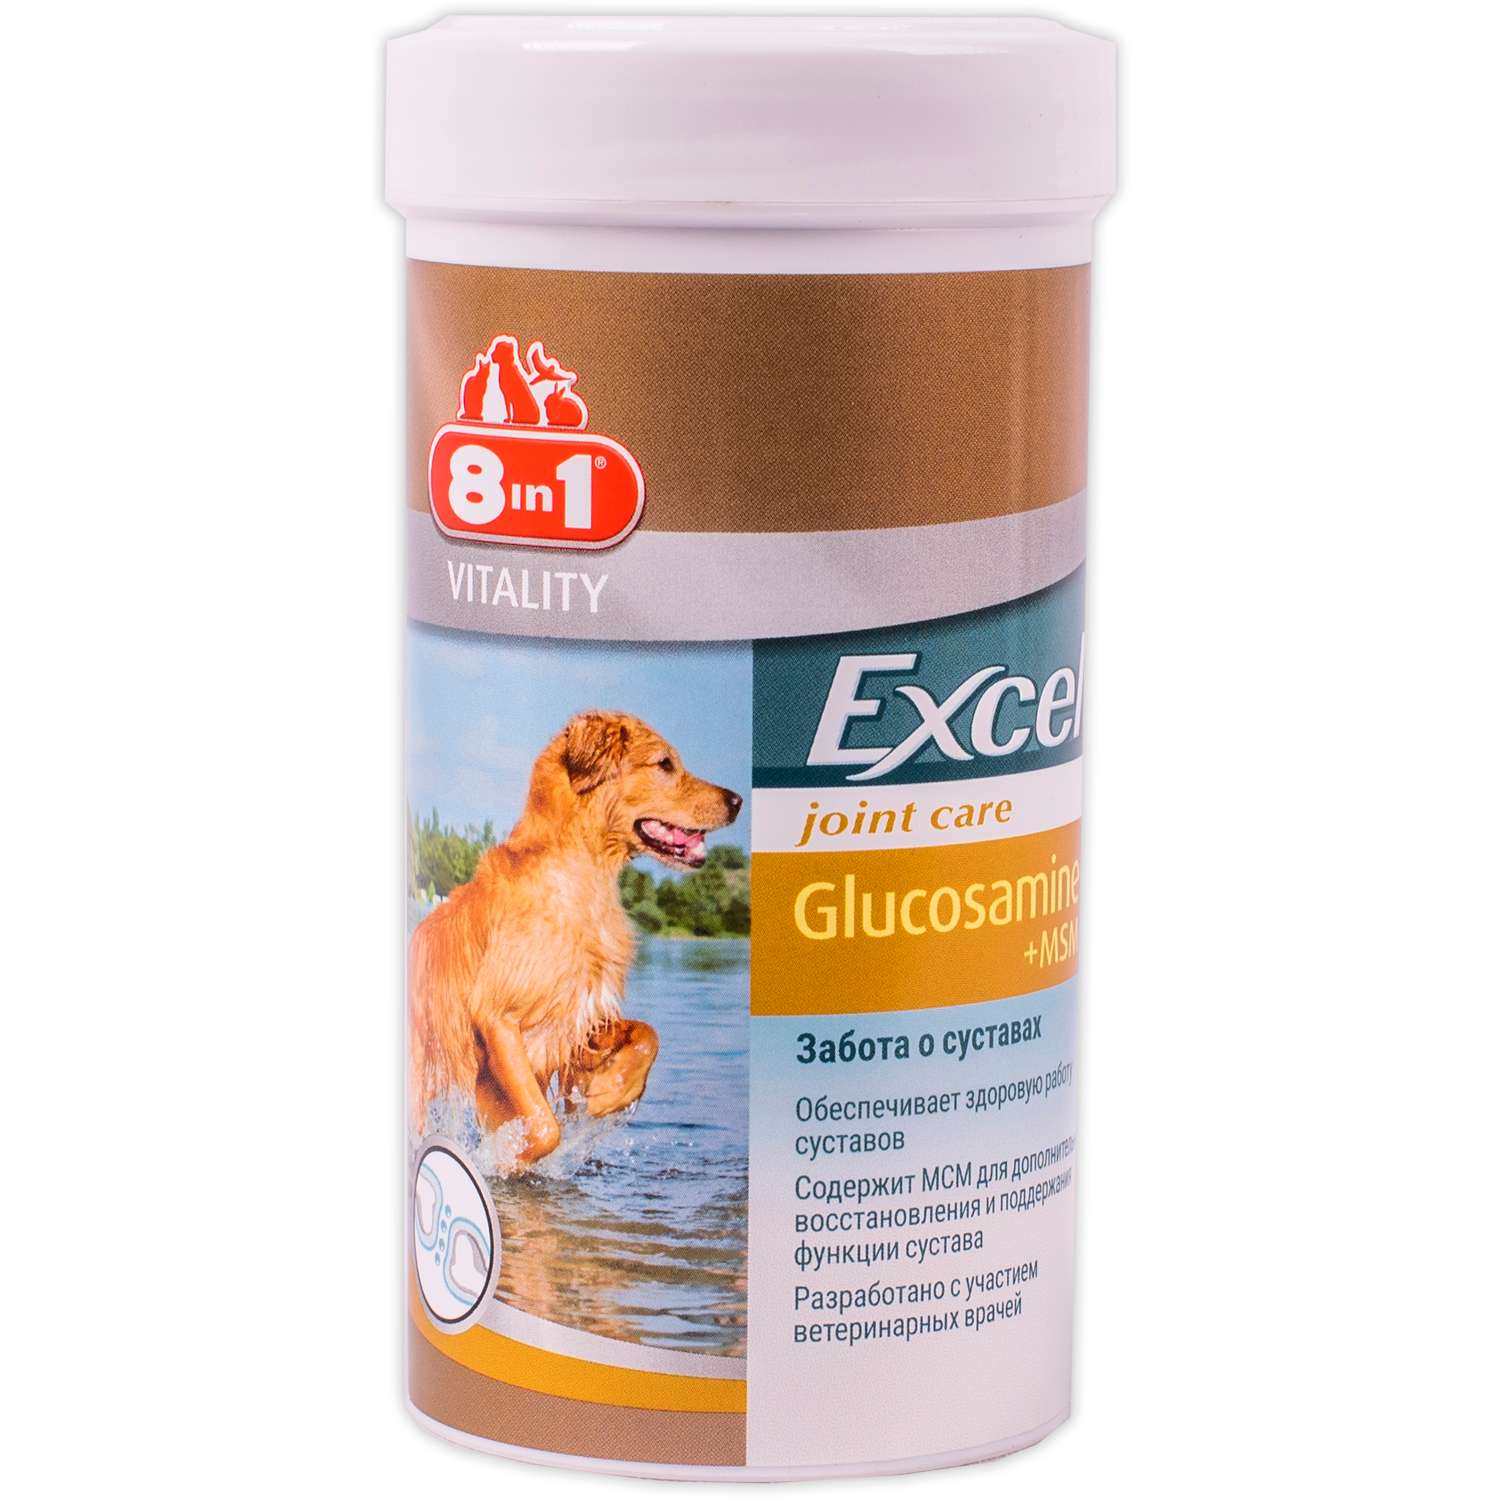 Добавка для собак 8in1 Excel Глюкозамин c MCM 55таблеток - фото 1